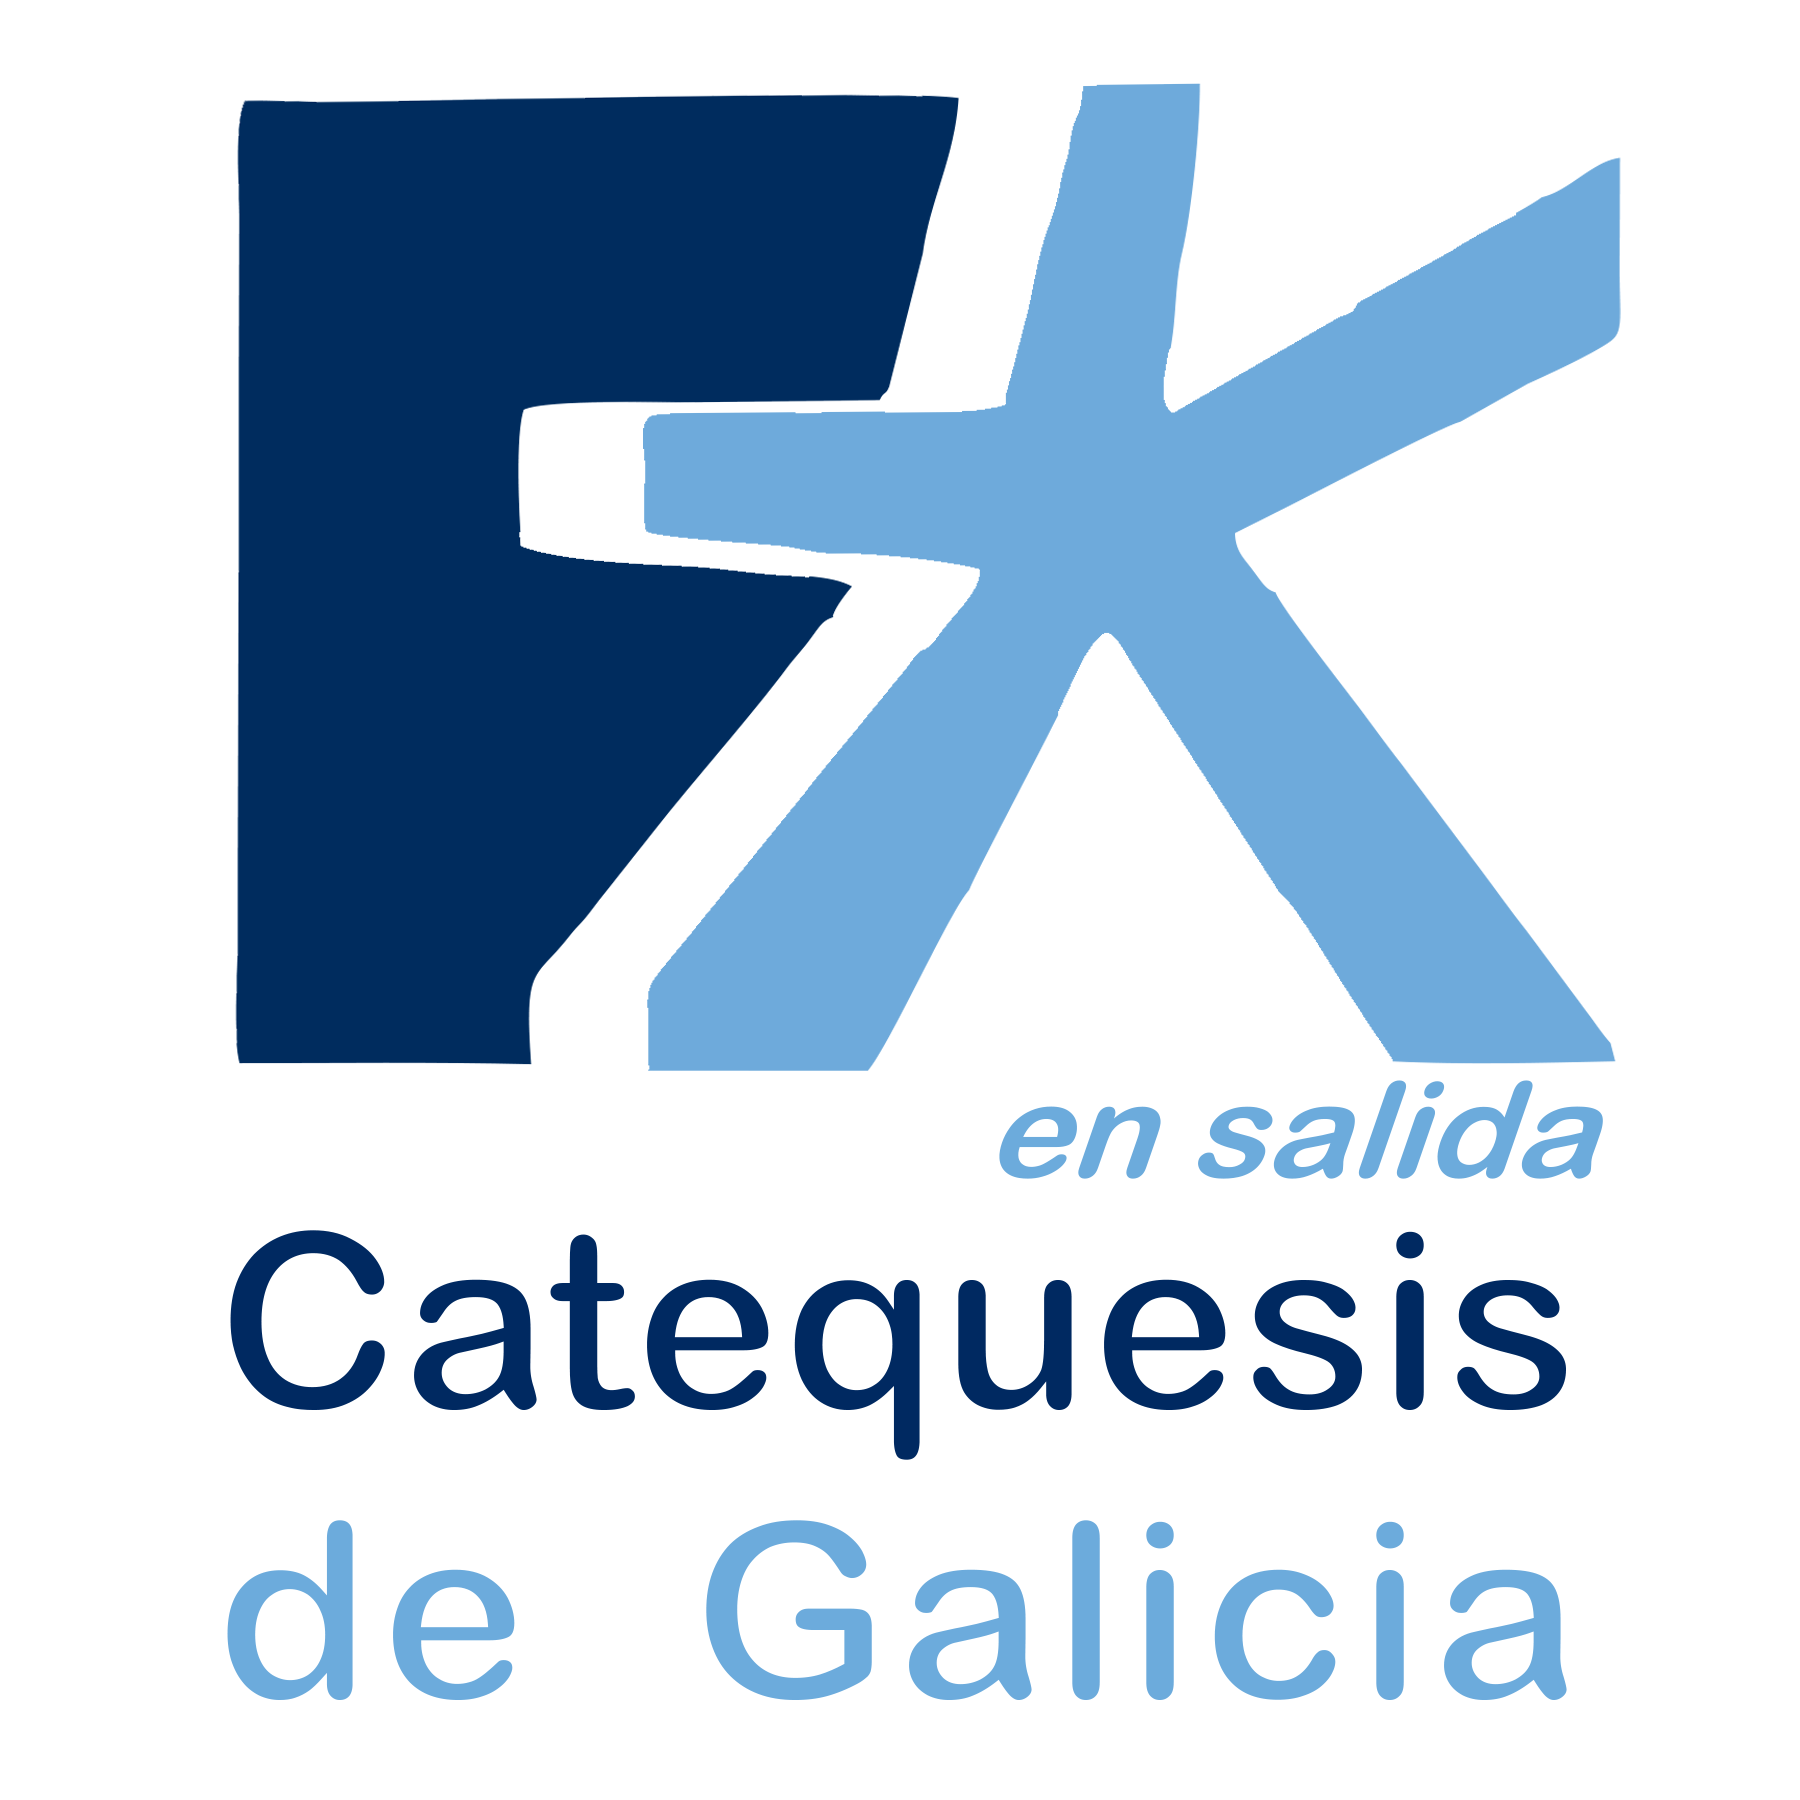 Catequesis de Galicia